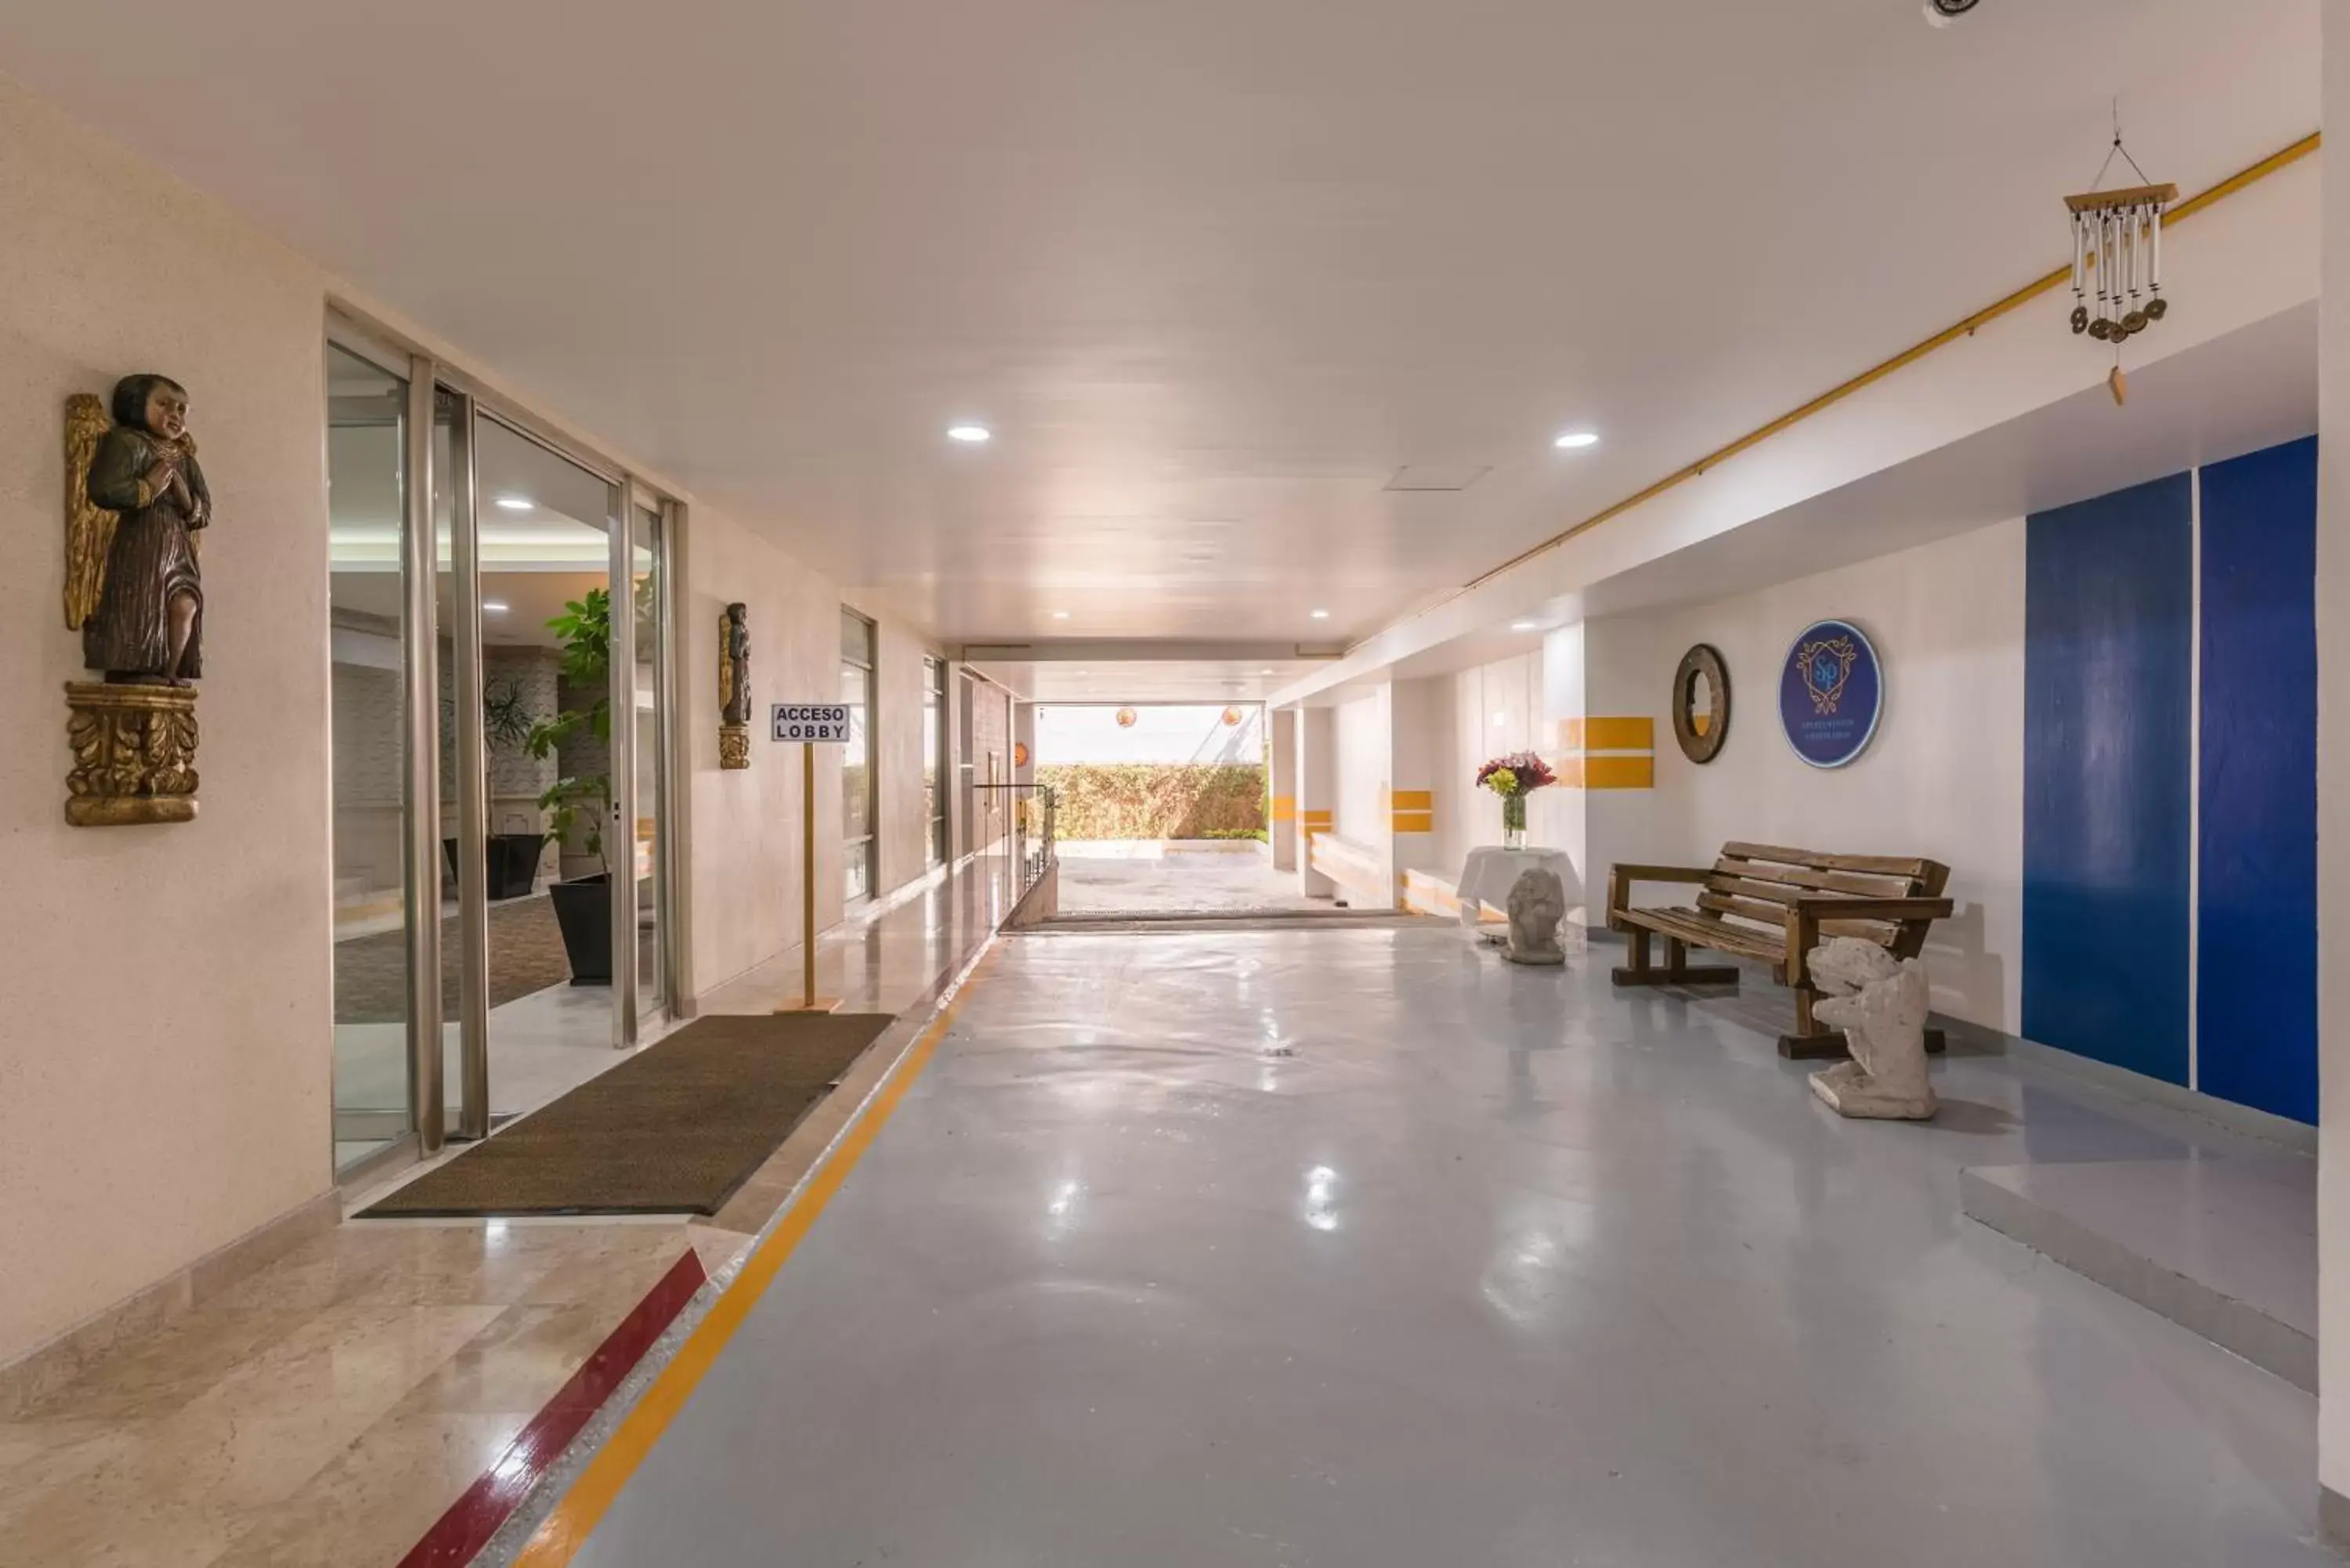 Lobby or reception in Suites Perisur Apartamentos Amueblados